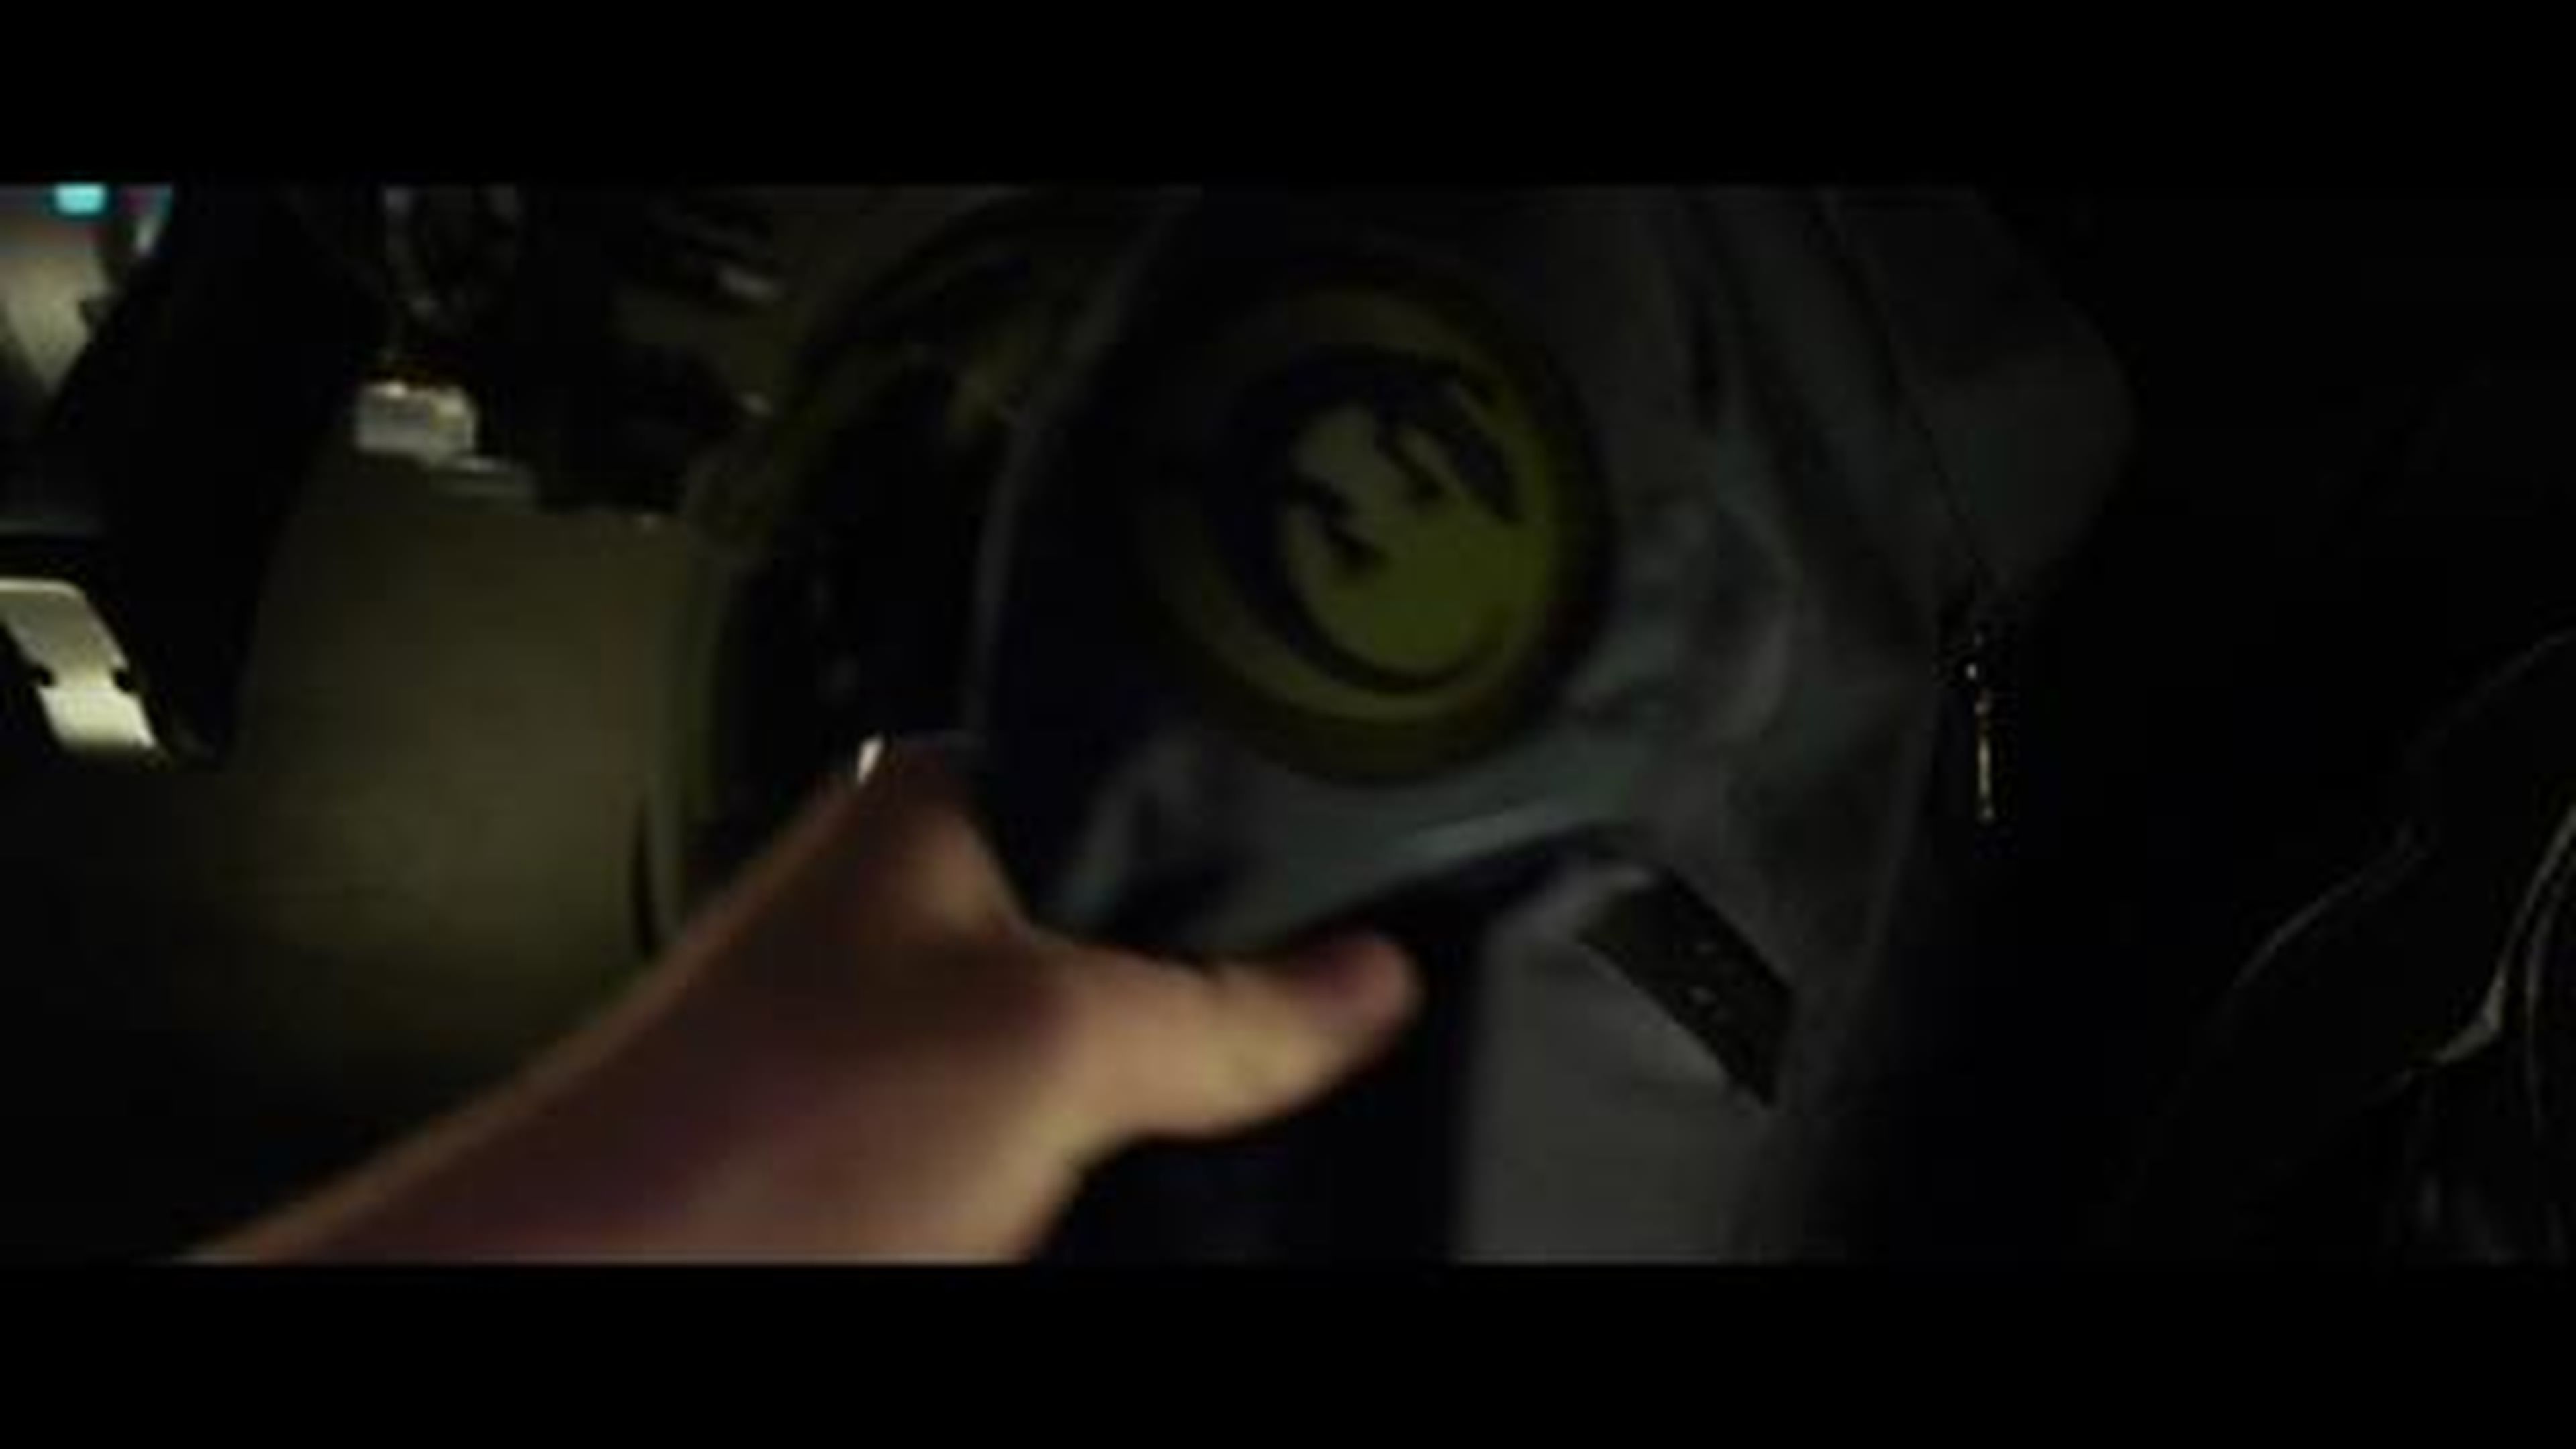 El juego de Ender - Trailer en español (HD)